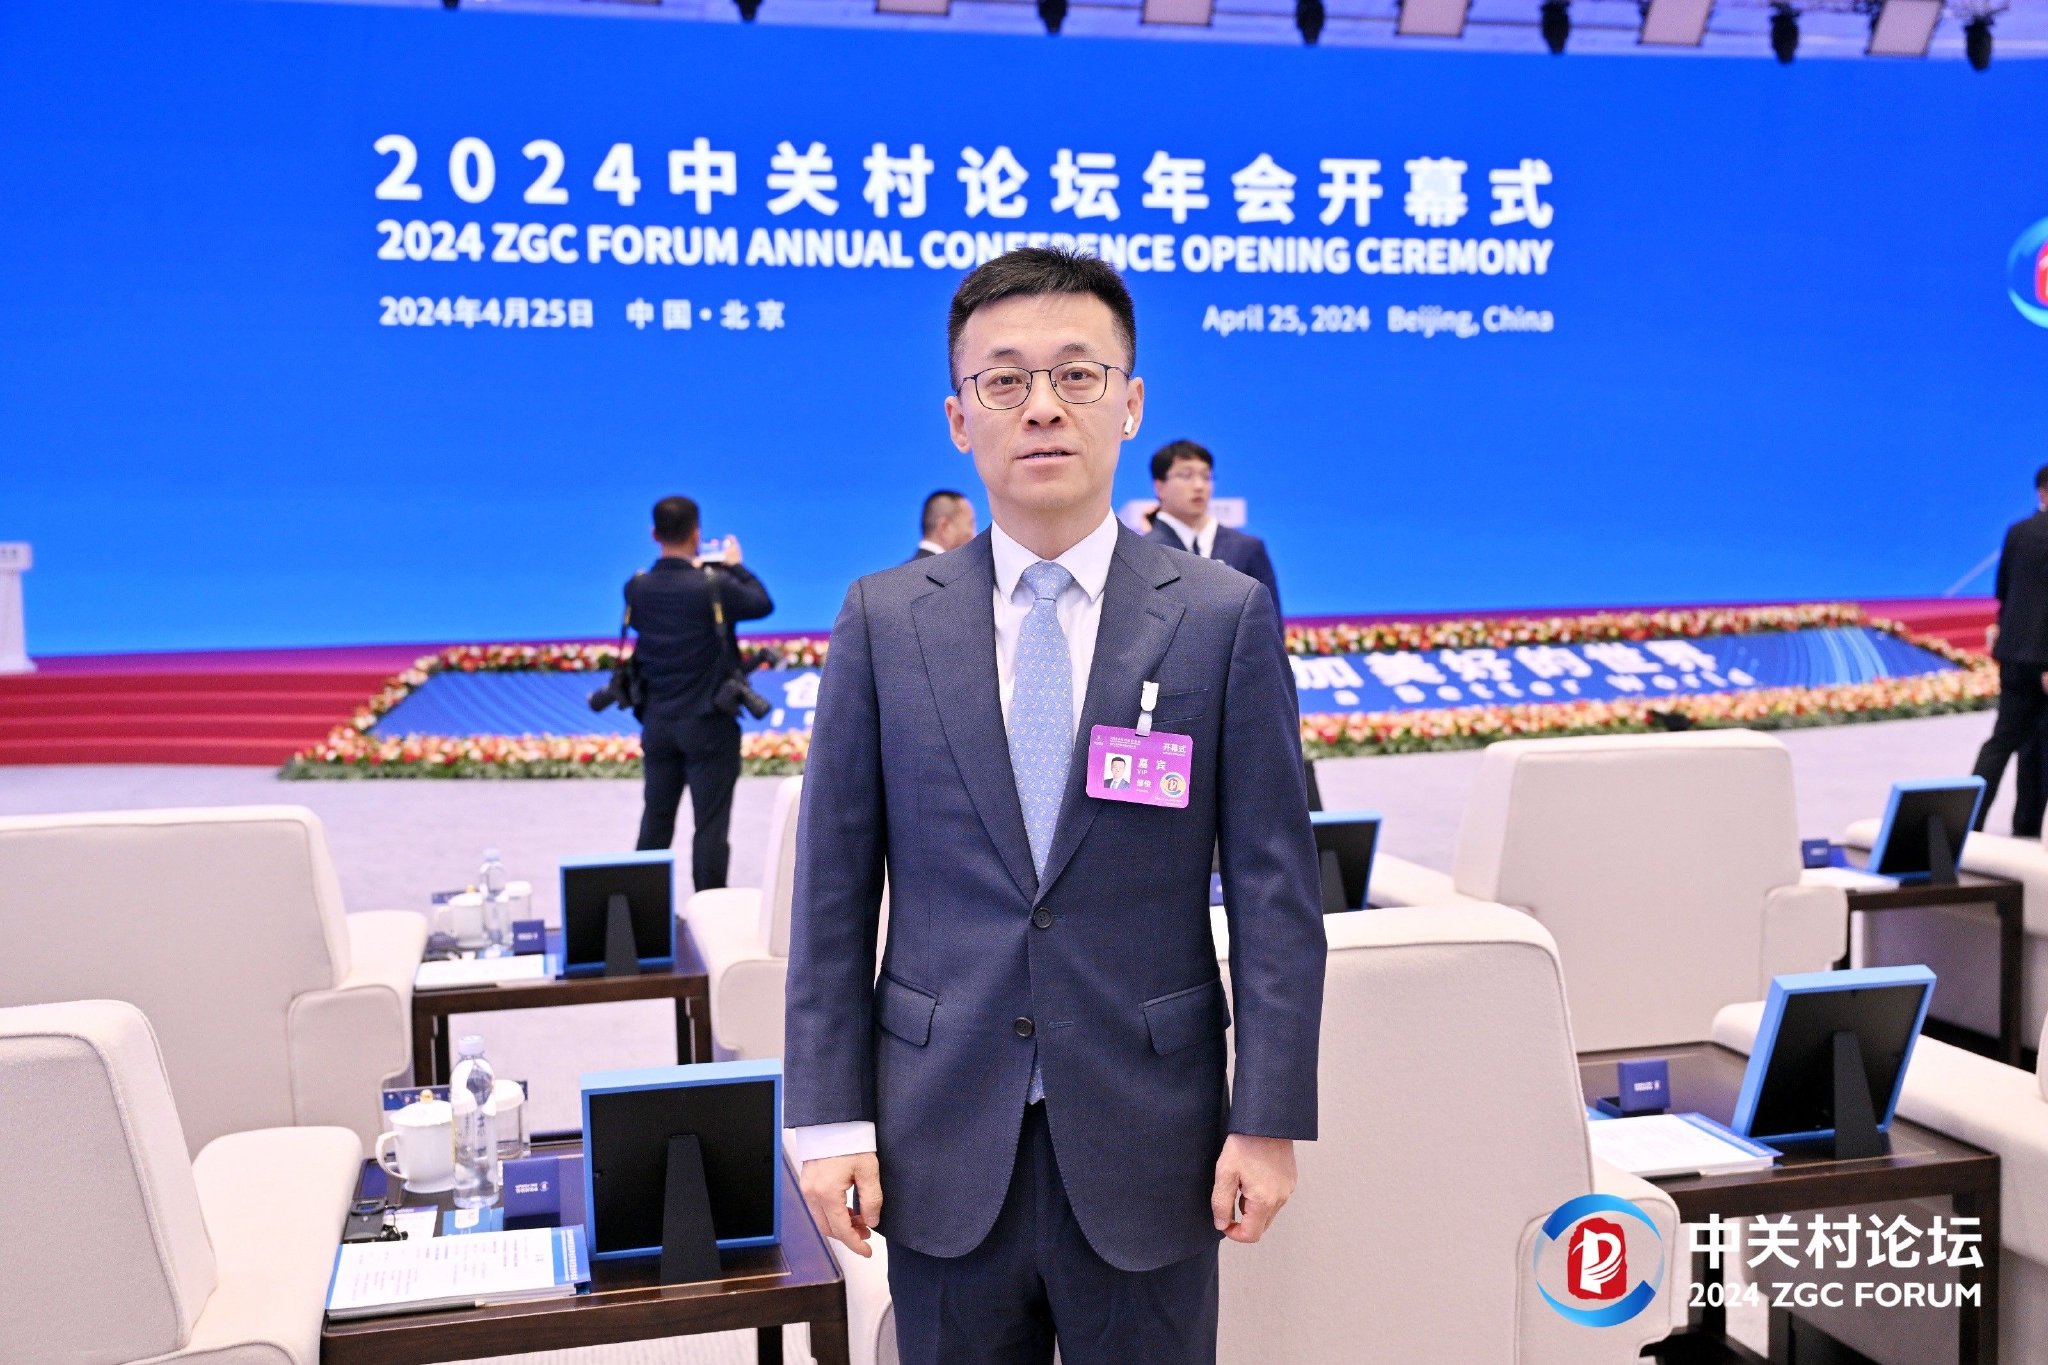 毕马威中国副主席邹俊受邀参加开幕式。毕马威中国供图